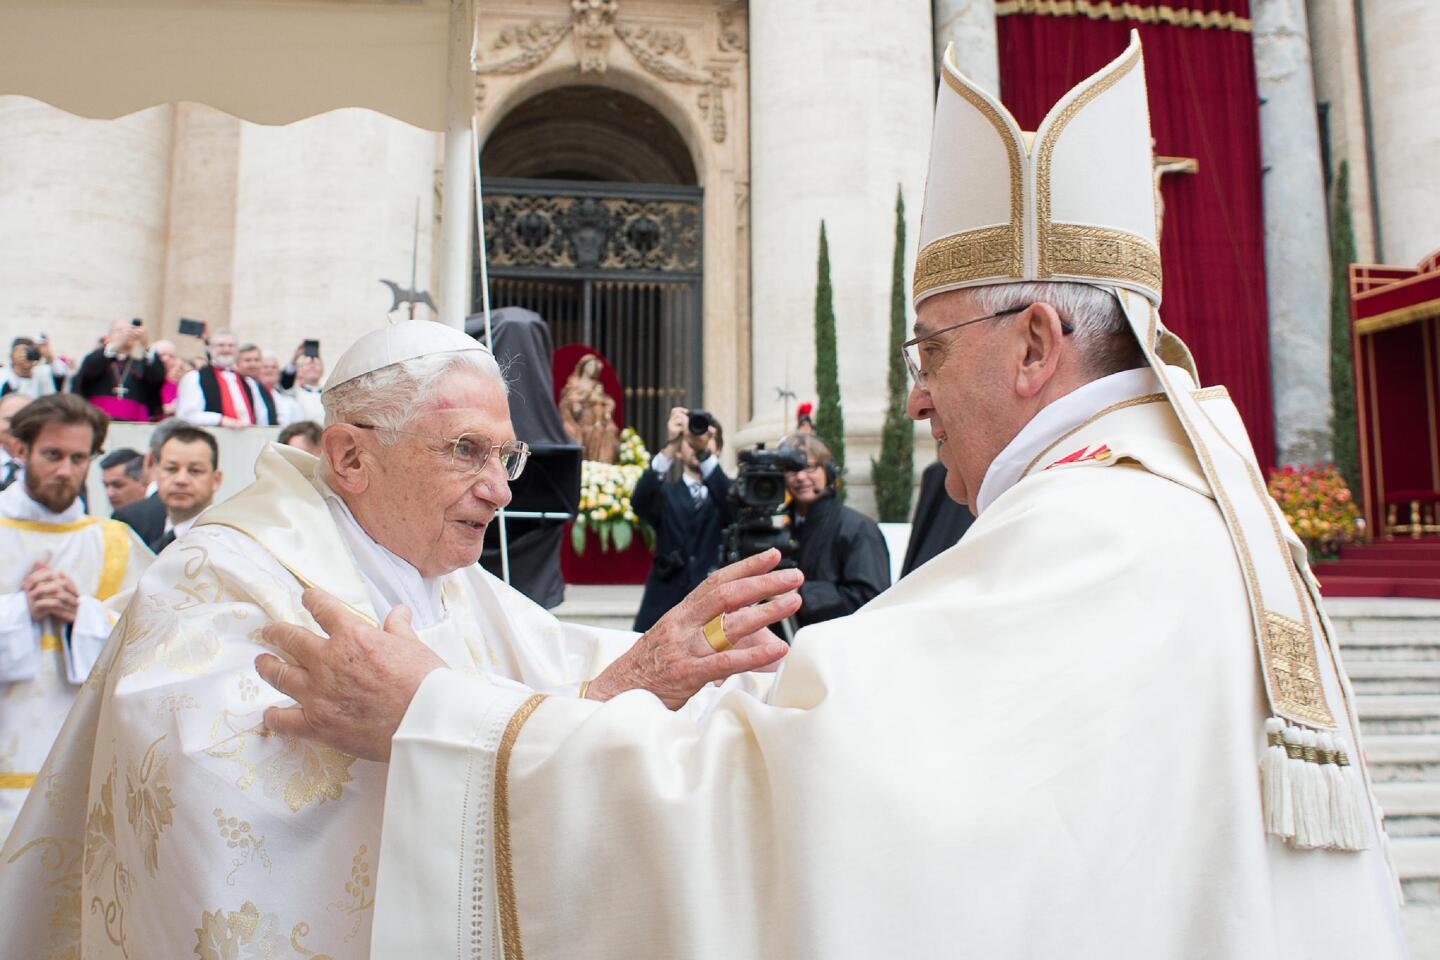 Popes Francis, Pope Emeritus Benedict XVI